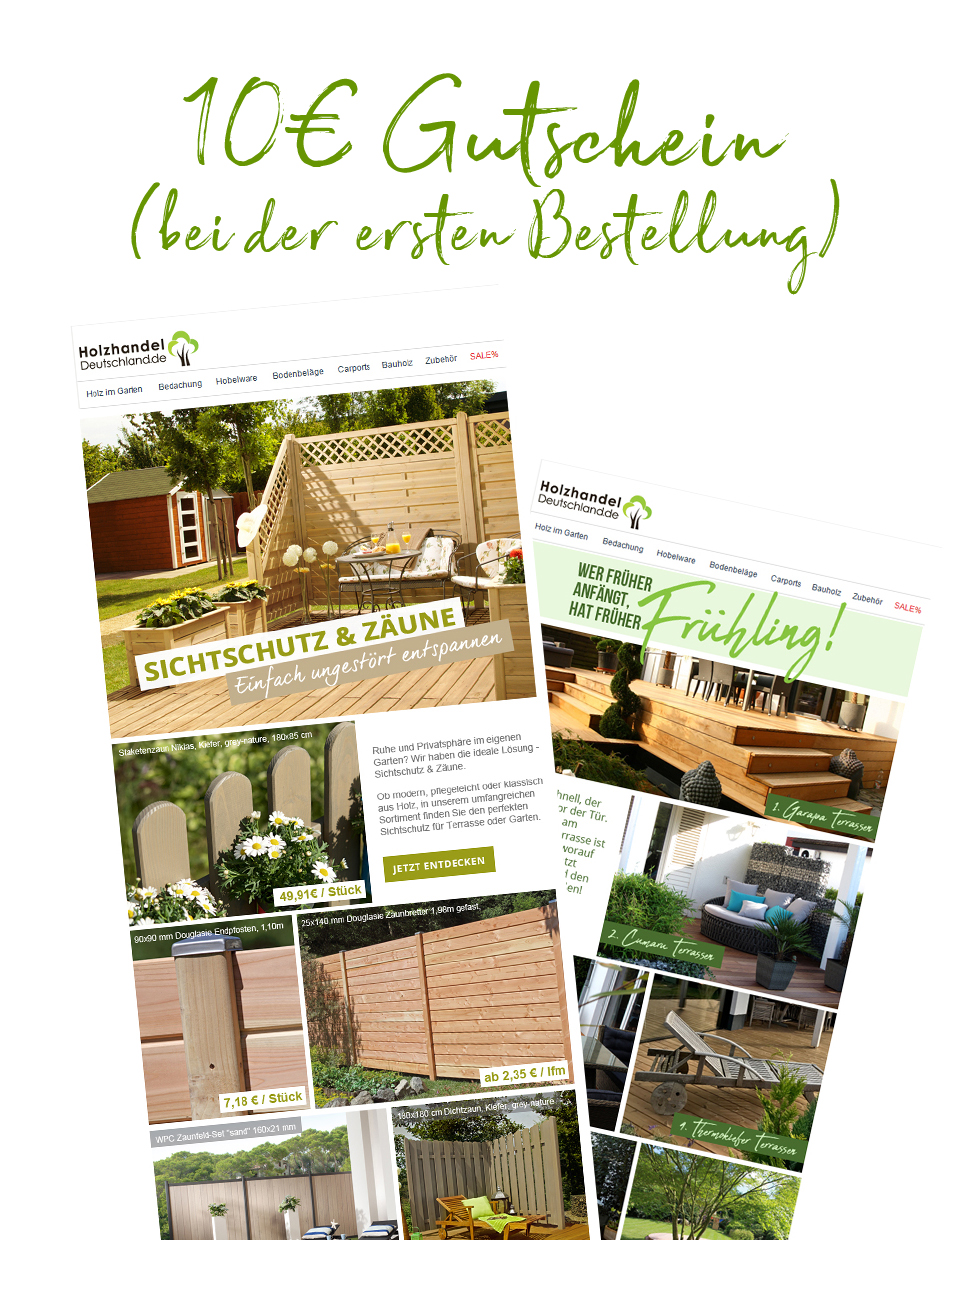 Holzhandel Deutschland Gutschein